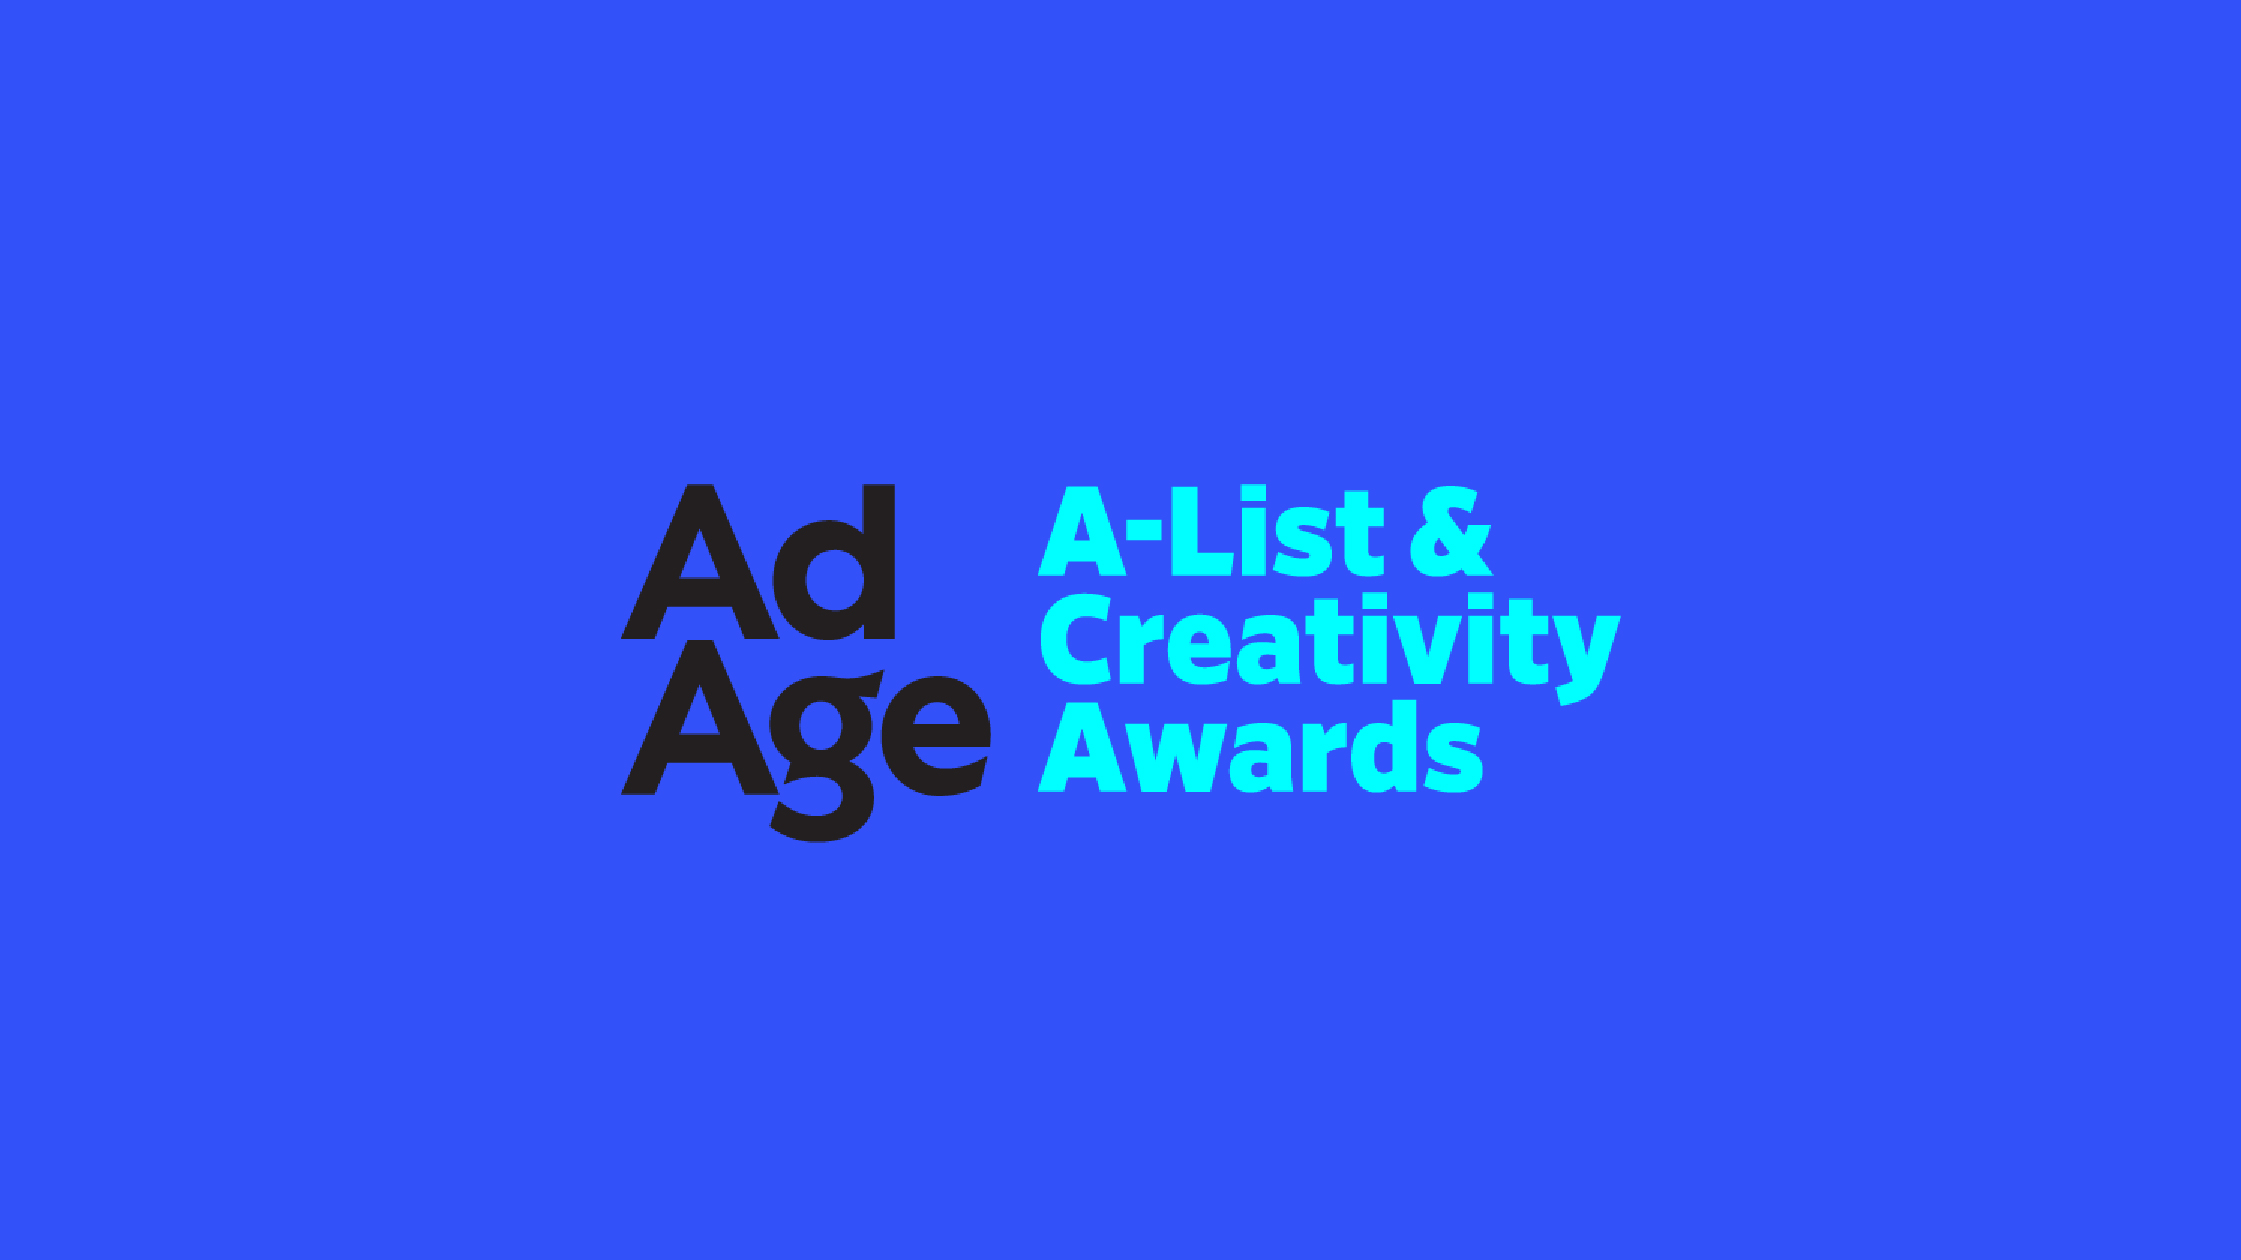 Ad Age A-List and Creativity Awards